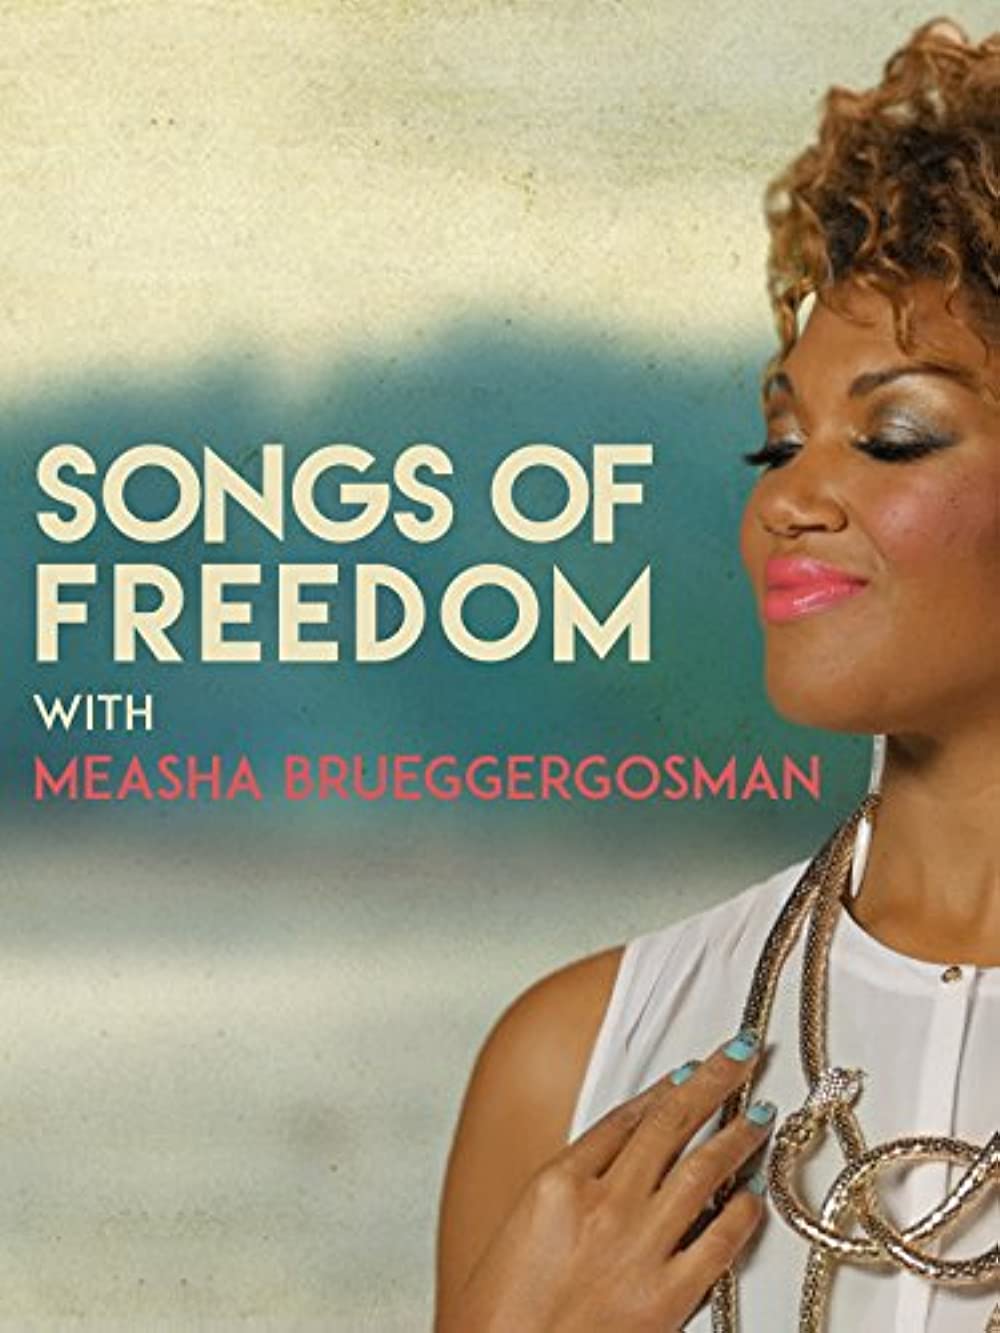 Filmbeschreibung zu Songs of Freedom